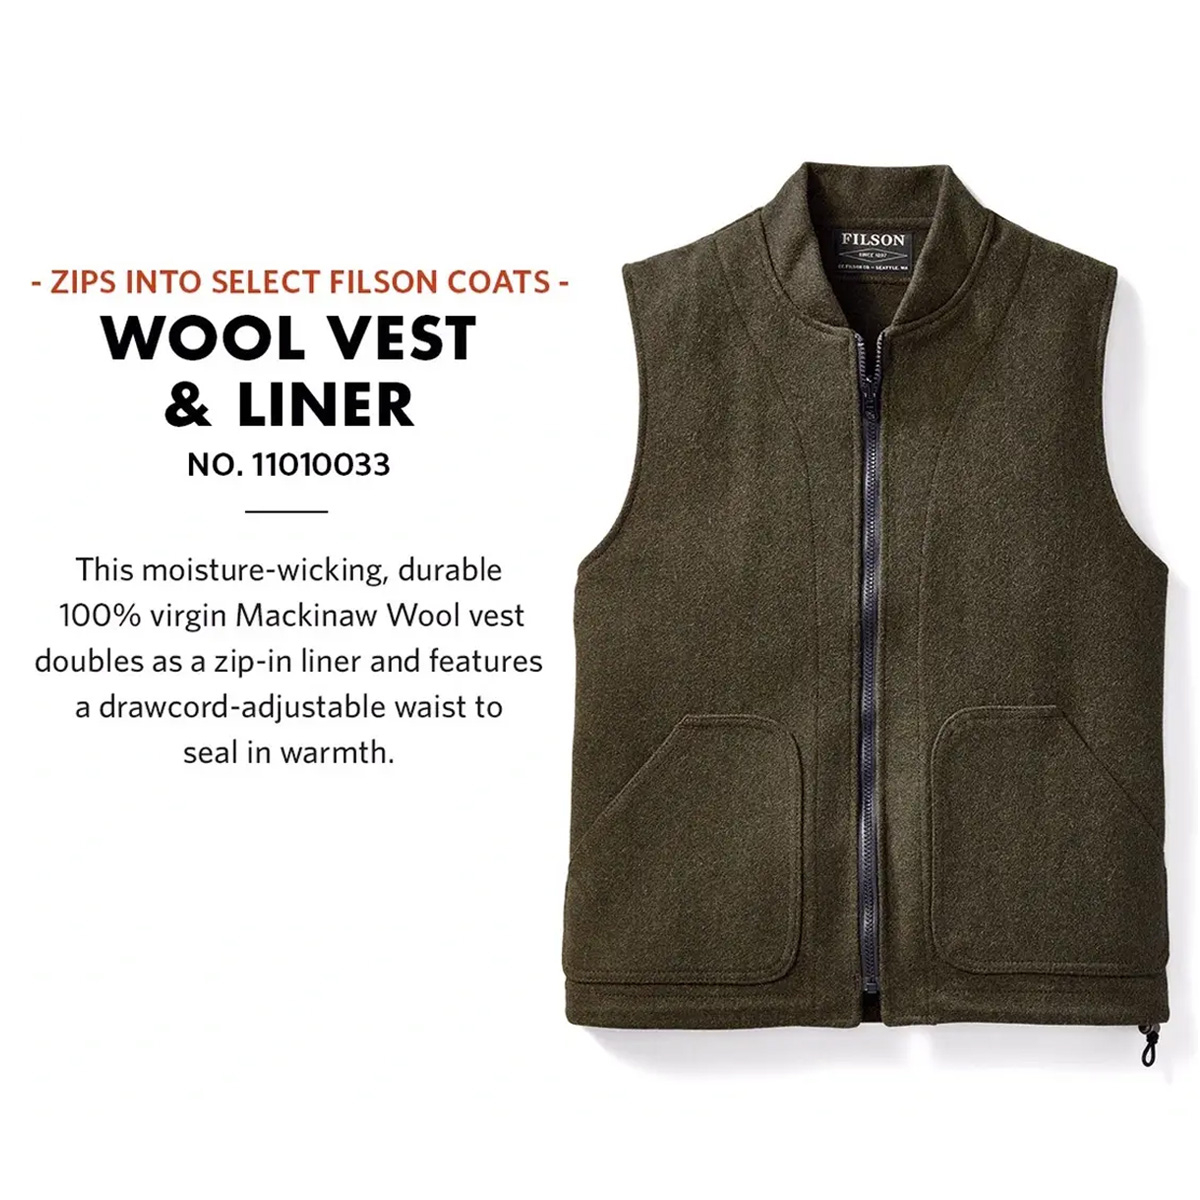 Filson Mackinaw Wool Vest Liner Forest Green, Klassische Wollweste aus 100% reiner Mackinaw-Wolle